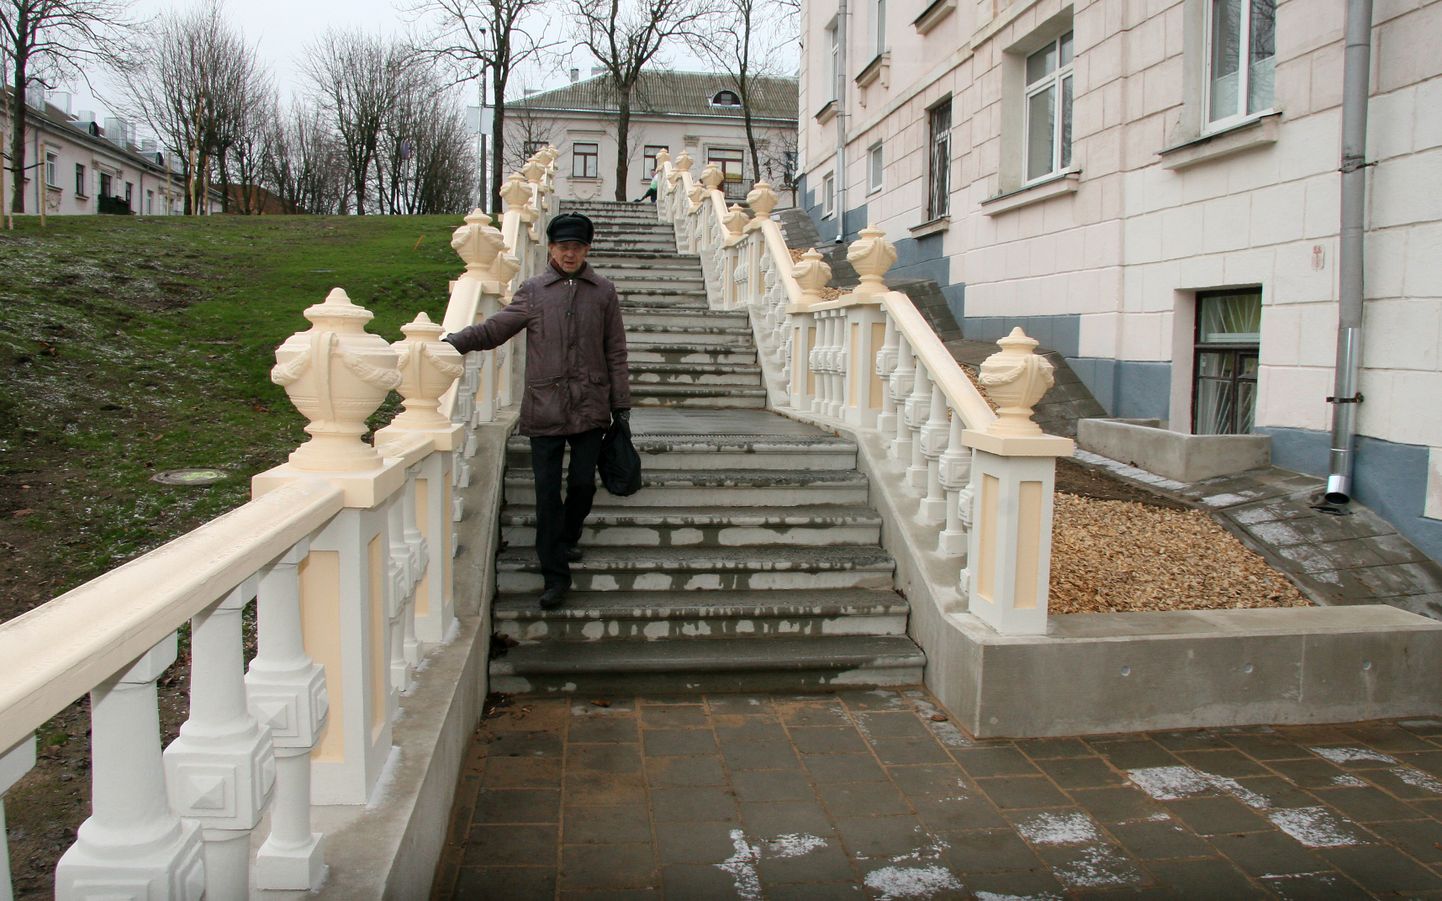 Uuenenud trepid täiendavad Sillamäe ajaloolise linnasüdame arhitektuuriansamblit.